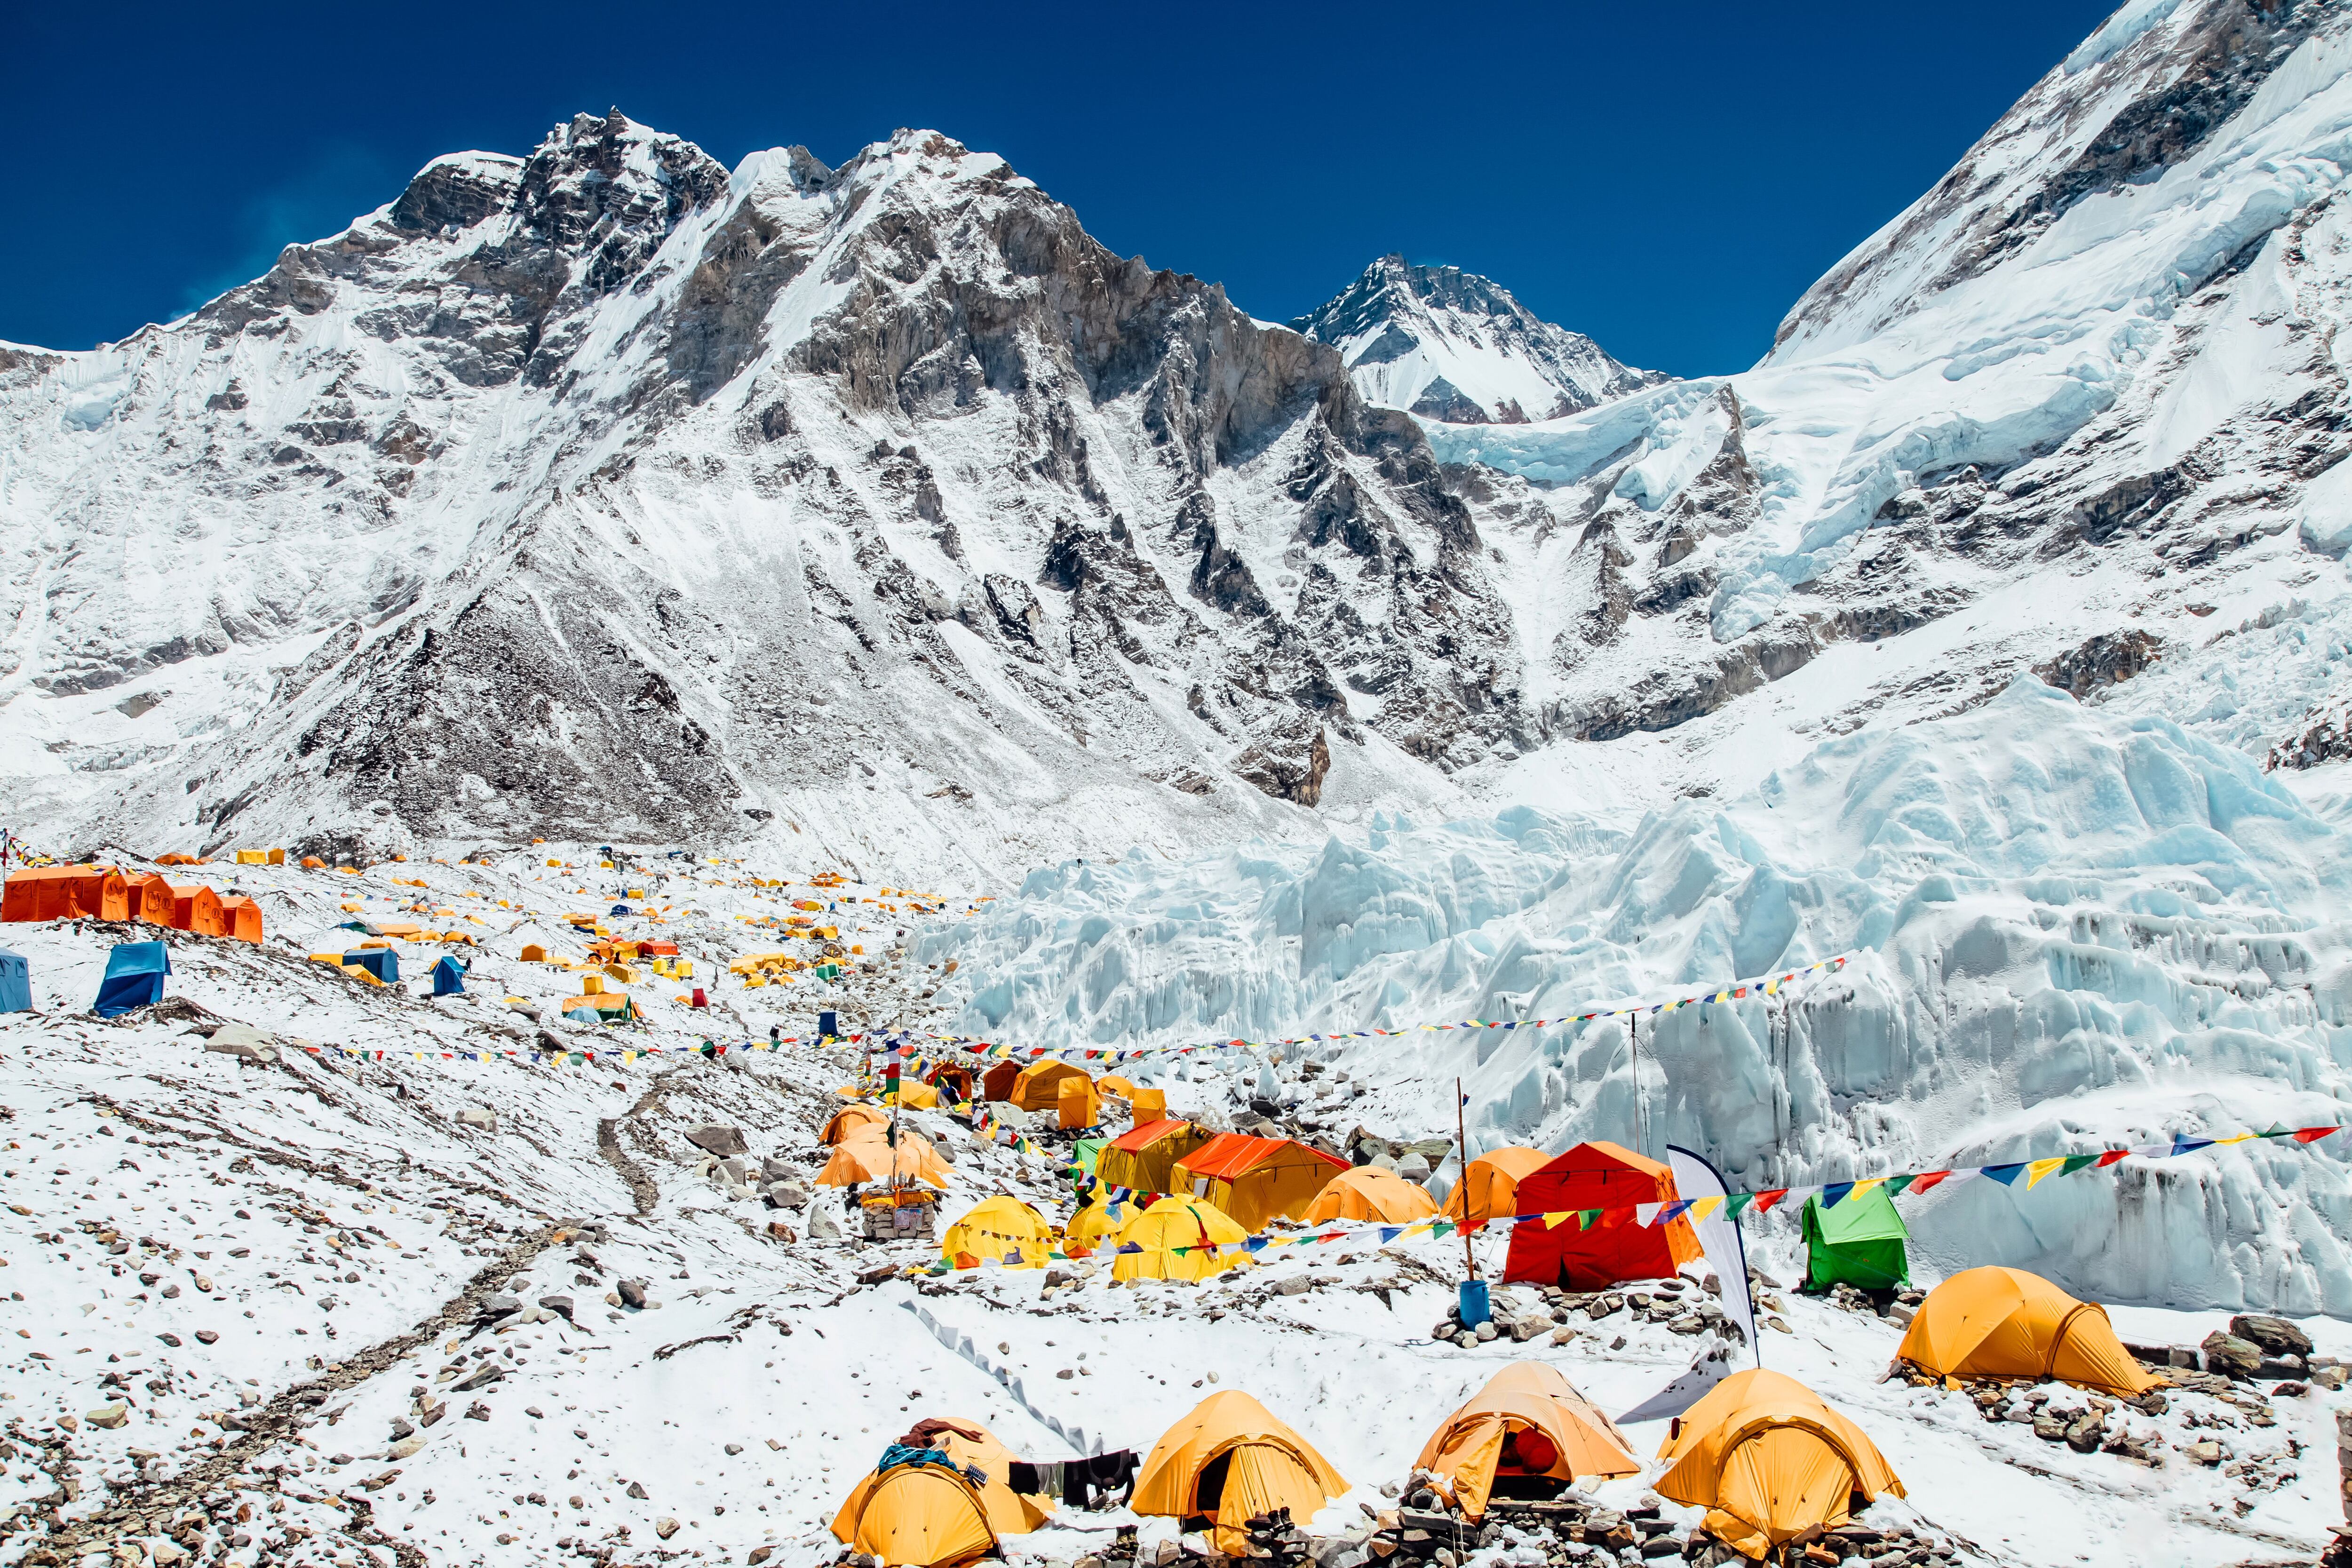 Tiendas de campaña en el campamento base del monte Everest, el glaciar y las montañas de Khumbu.